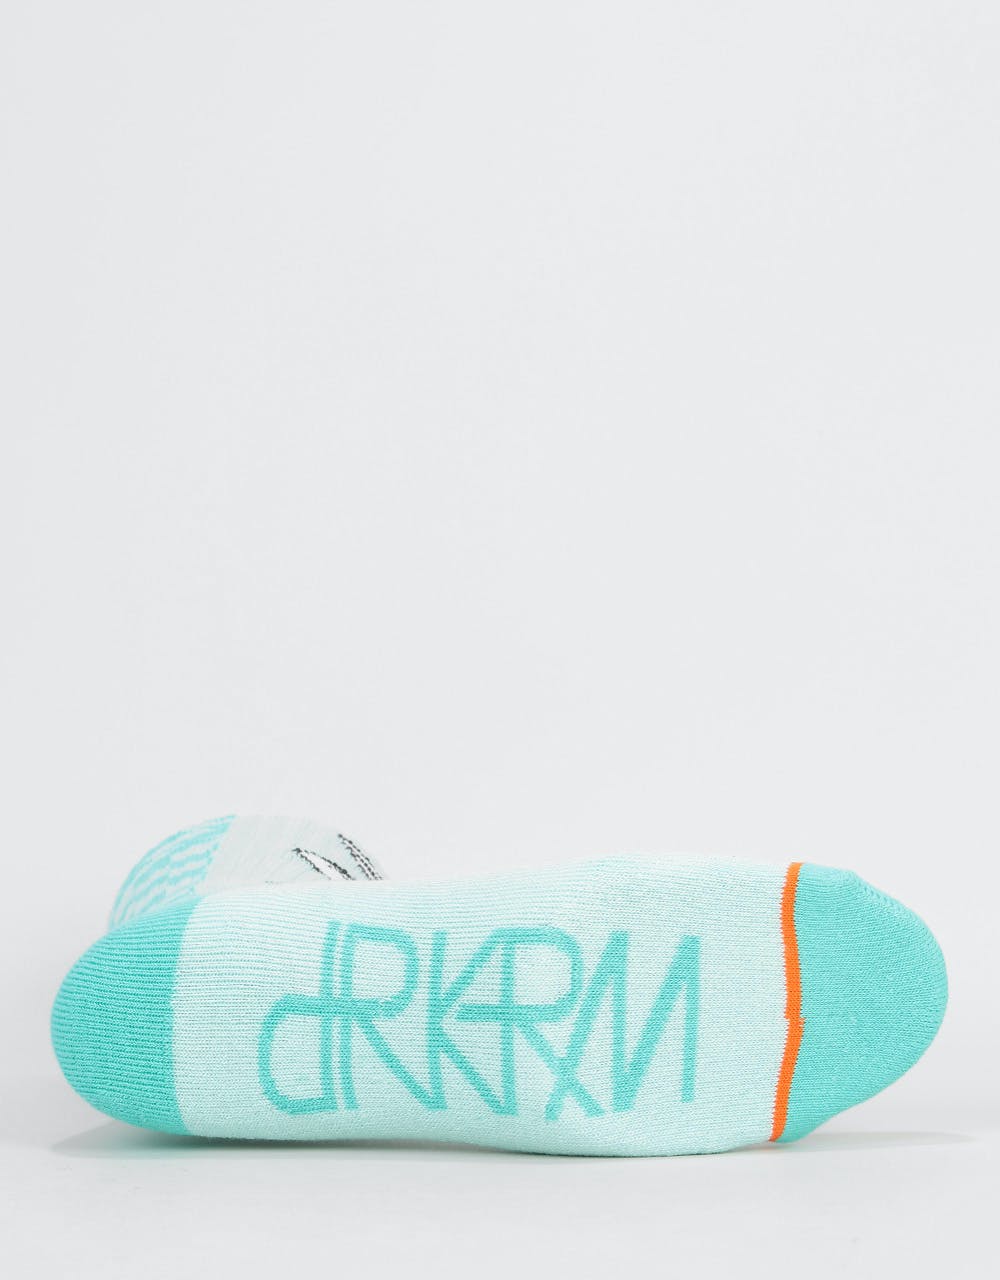 Darkroom White Rabbit Socks - Light Blue